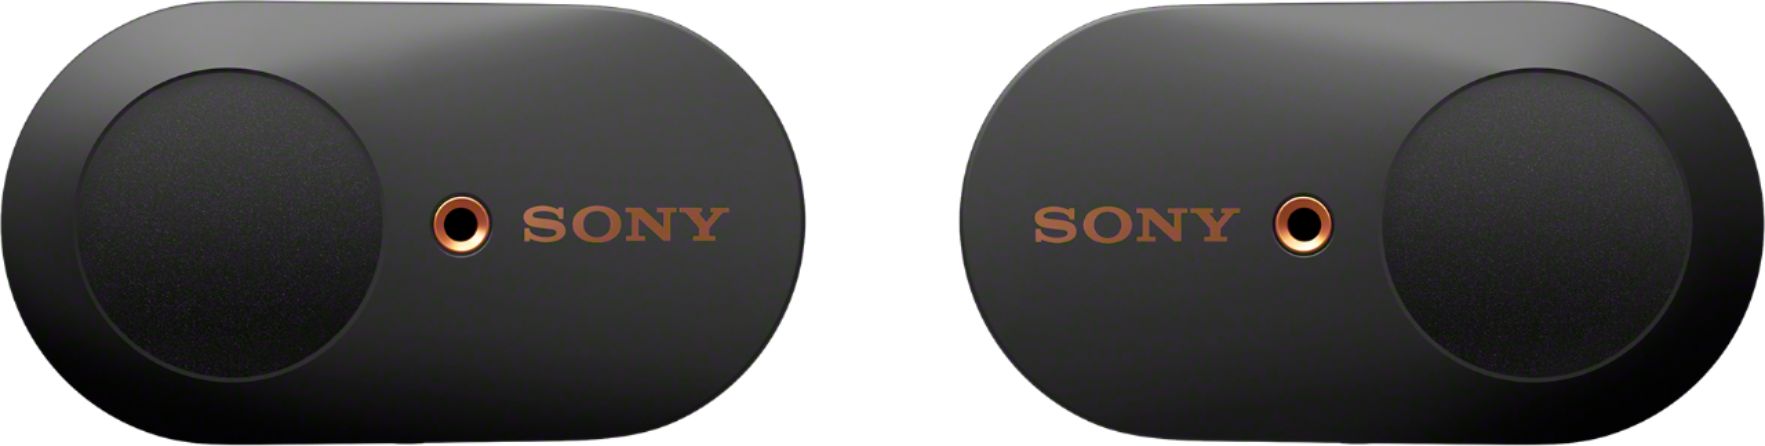 オーディオ機器 ヘッドフォン Sony WF-1000XM3 True Wireless Noise Cancelling In-Ear 